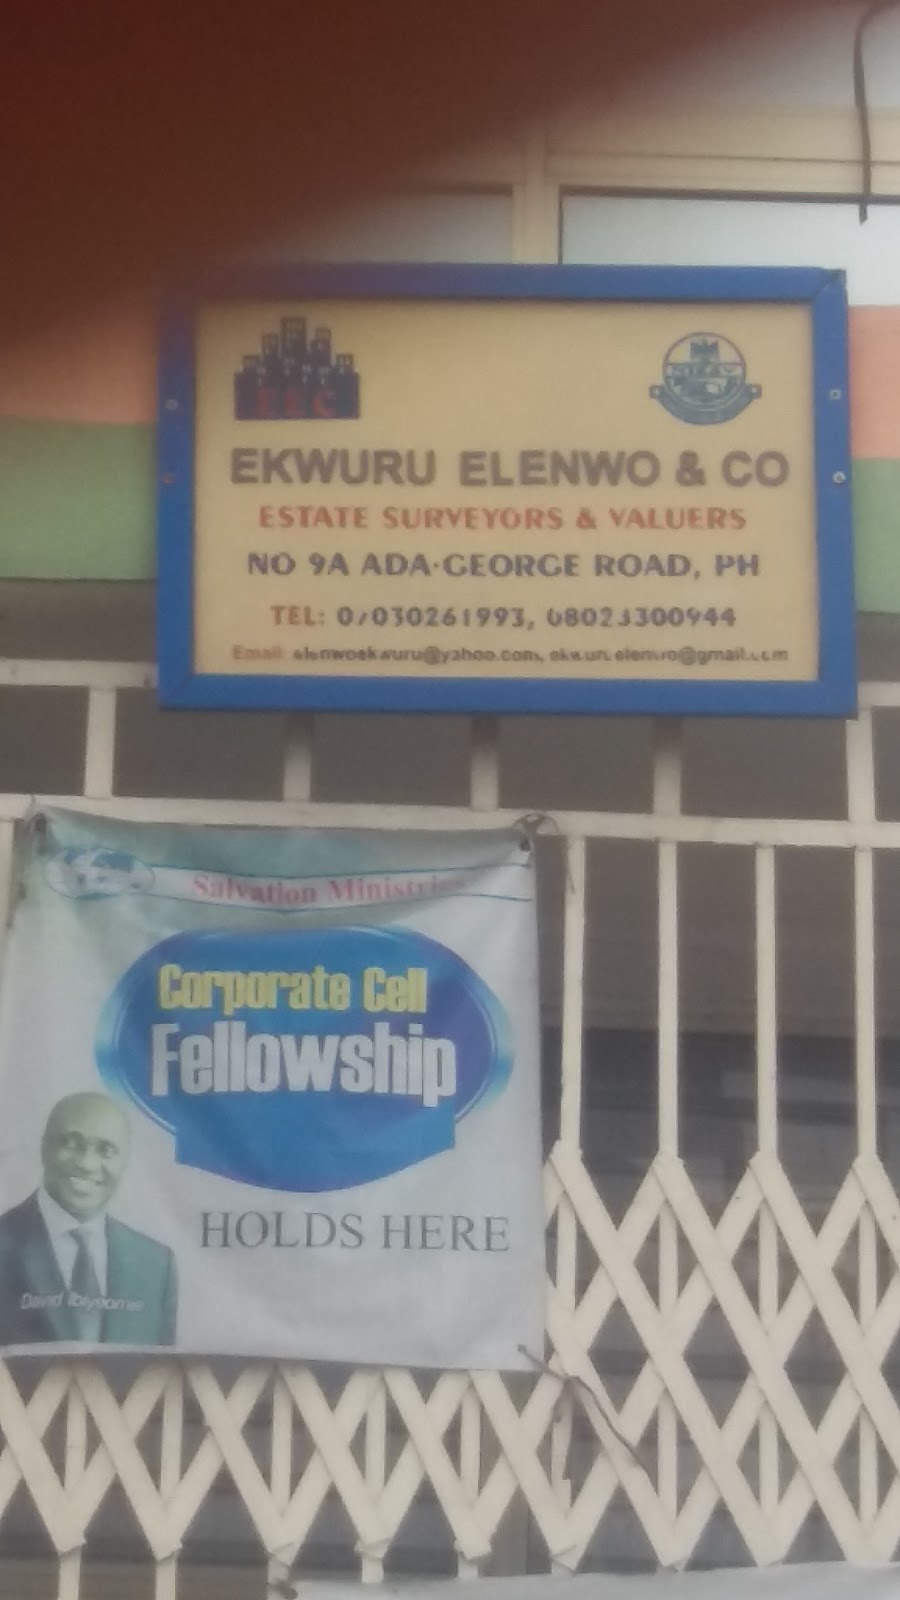 Ekwuru Elenwo & Co